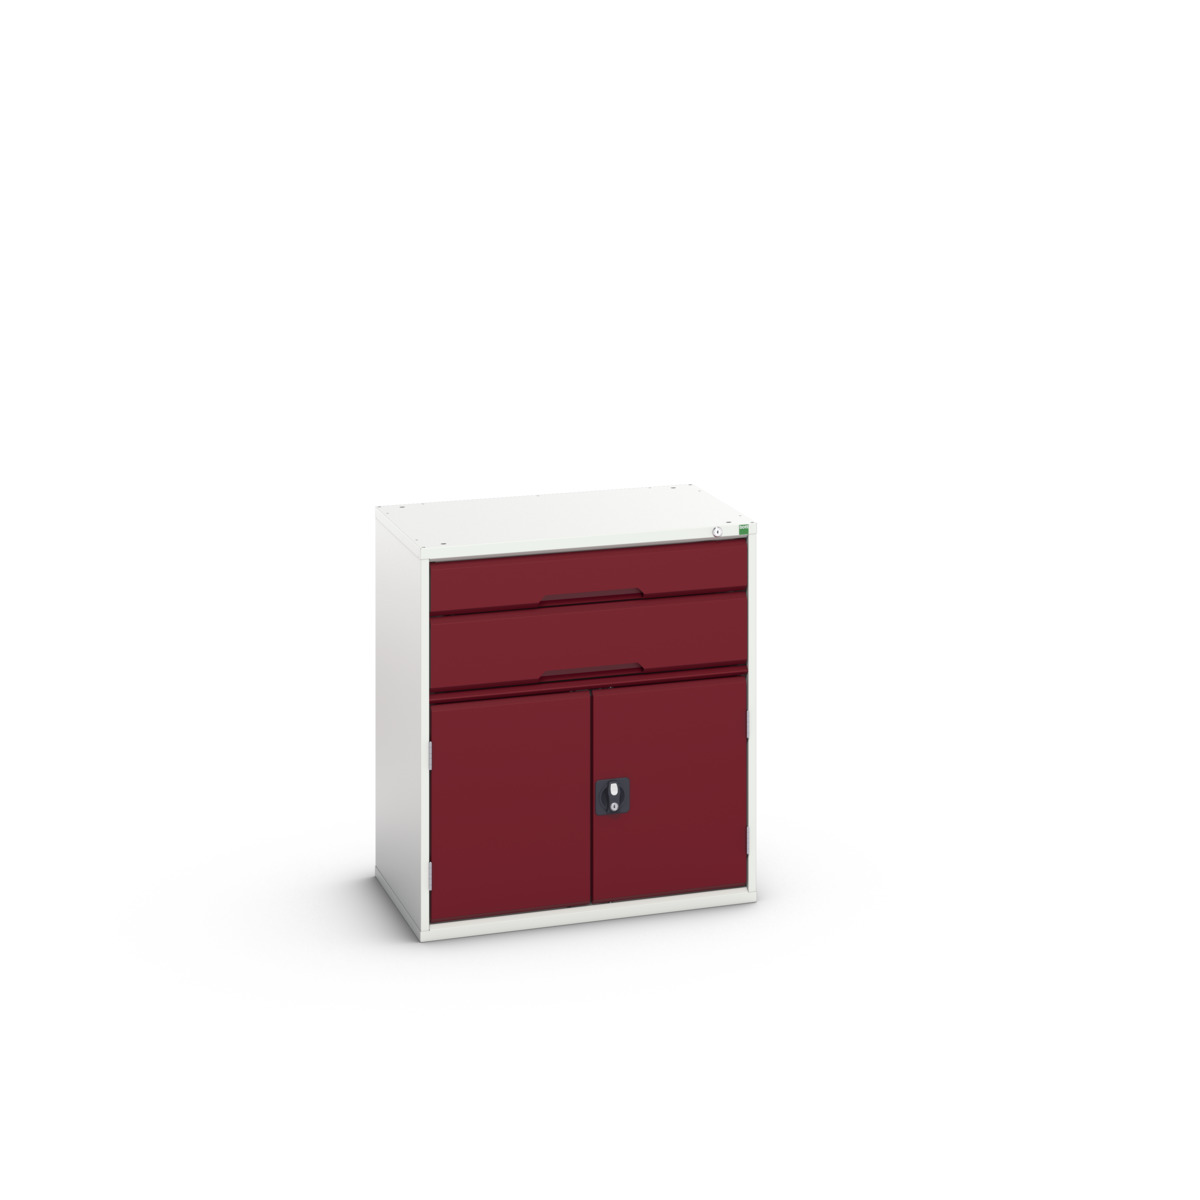 16925137.24 - verso drawer-door cabinet